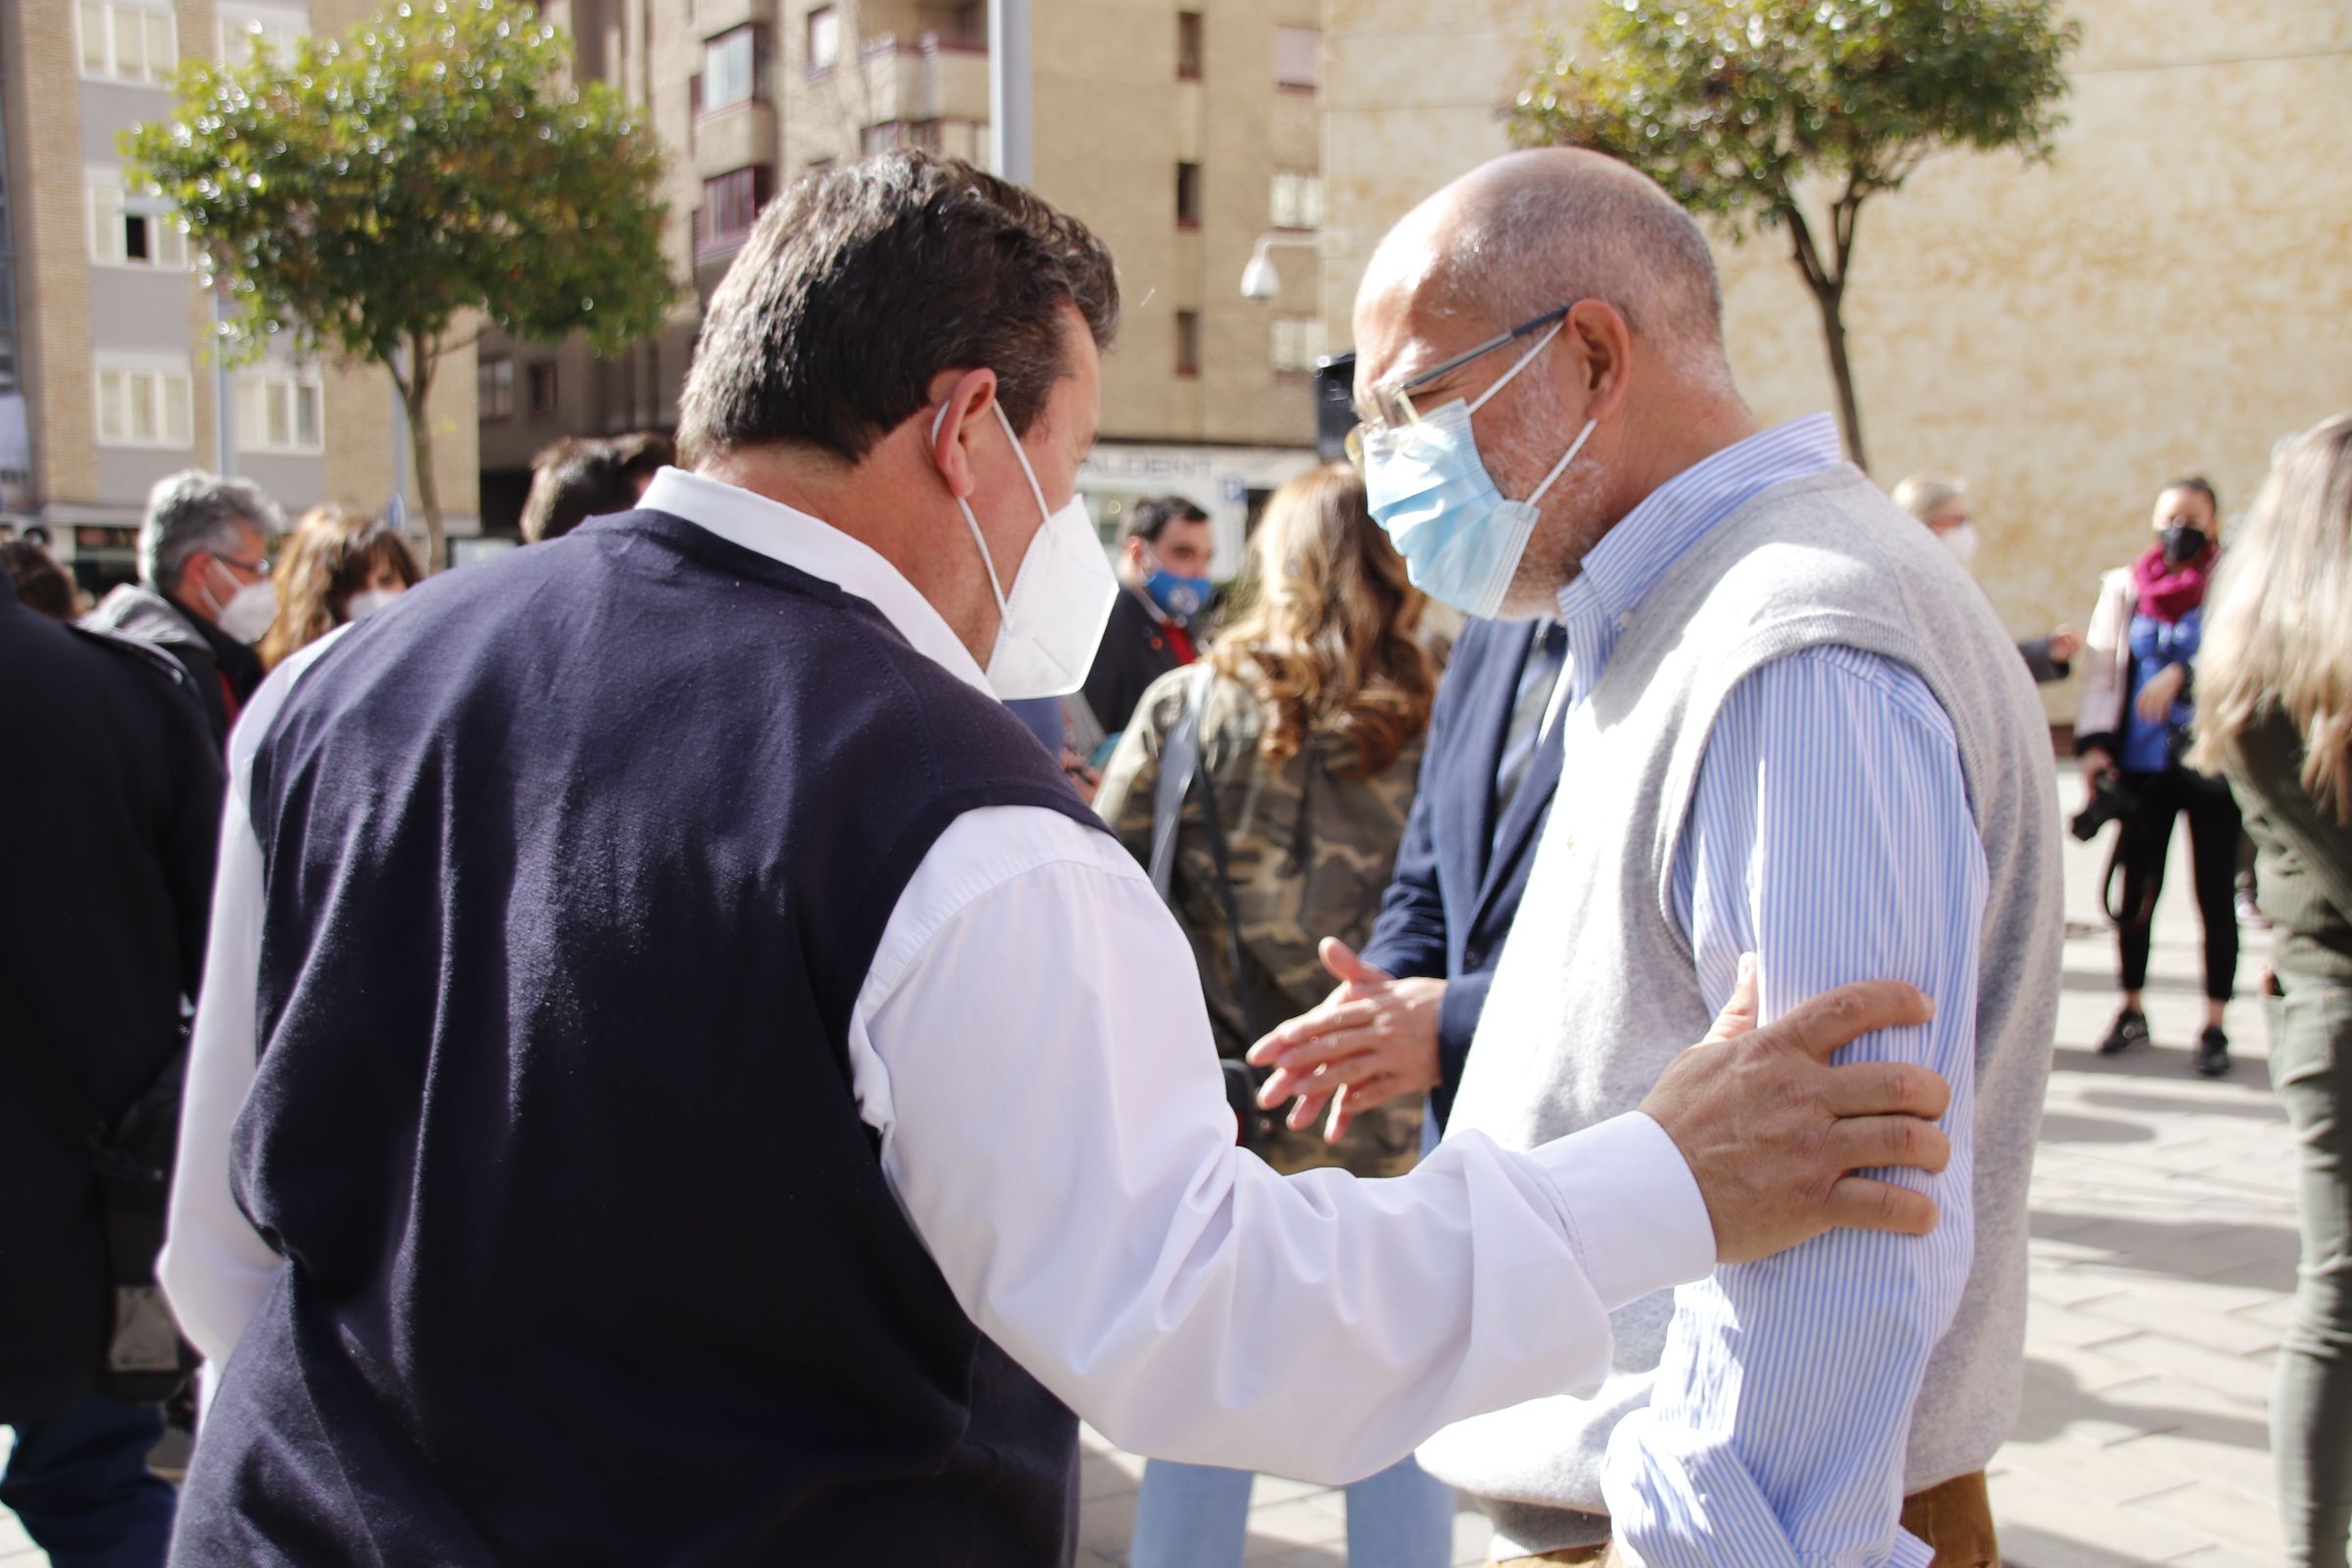 Francisco Igea y Luis Fuentes, atienden a los medios de comunicación en la carpa de Ciudadanos 